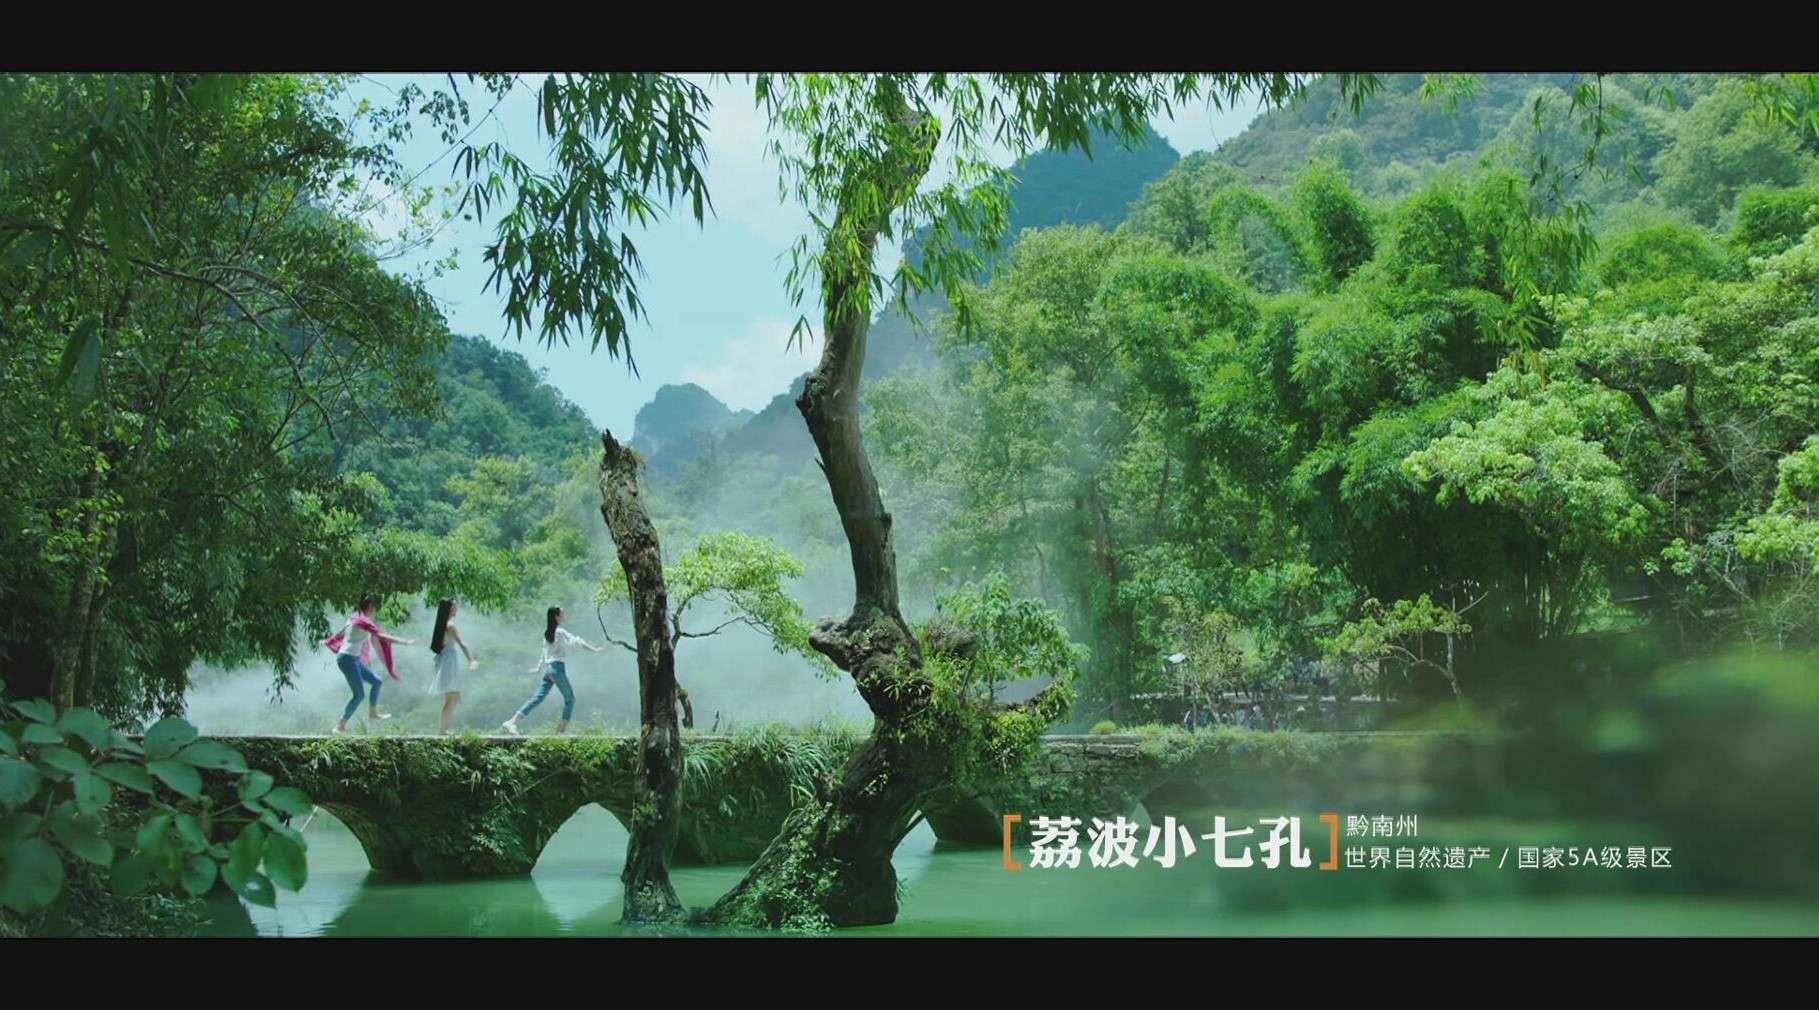 贵州省旅游宣传片——《我在贵州等你 8MIN B》